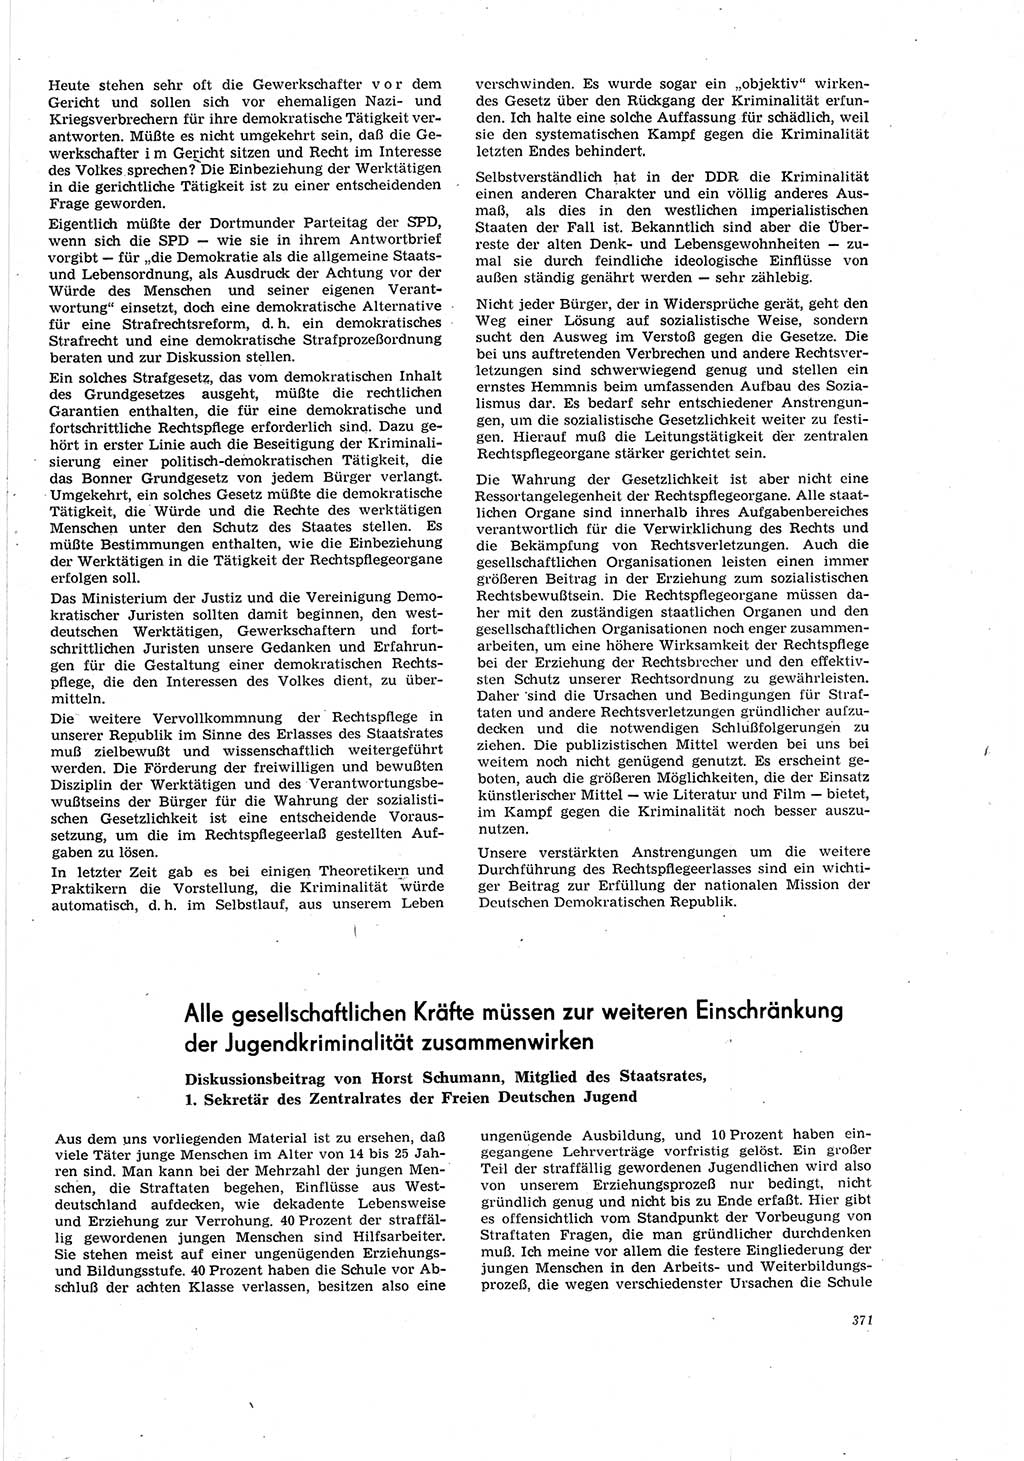 Neue Justiz (NJ), Zeitschrift für Recht und Rechtswissenschaft [Deutsche Demokratische Republik (DDR)], 20. Jahrgang 1966, Seite 371 (NJ DDR 1966, S. 371)